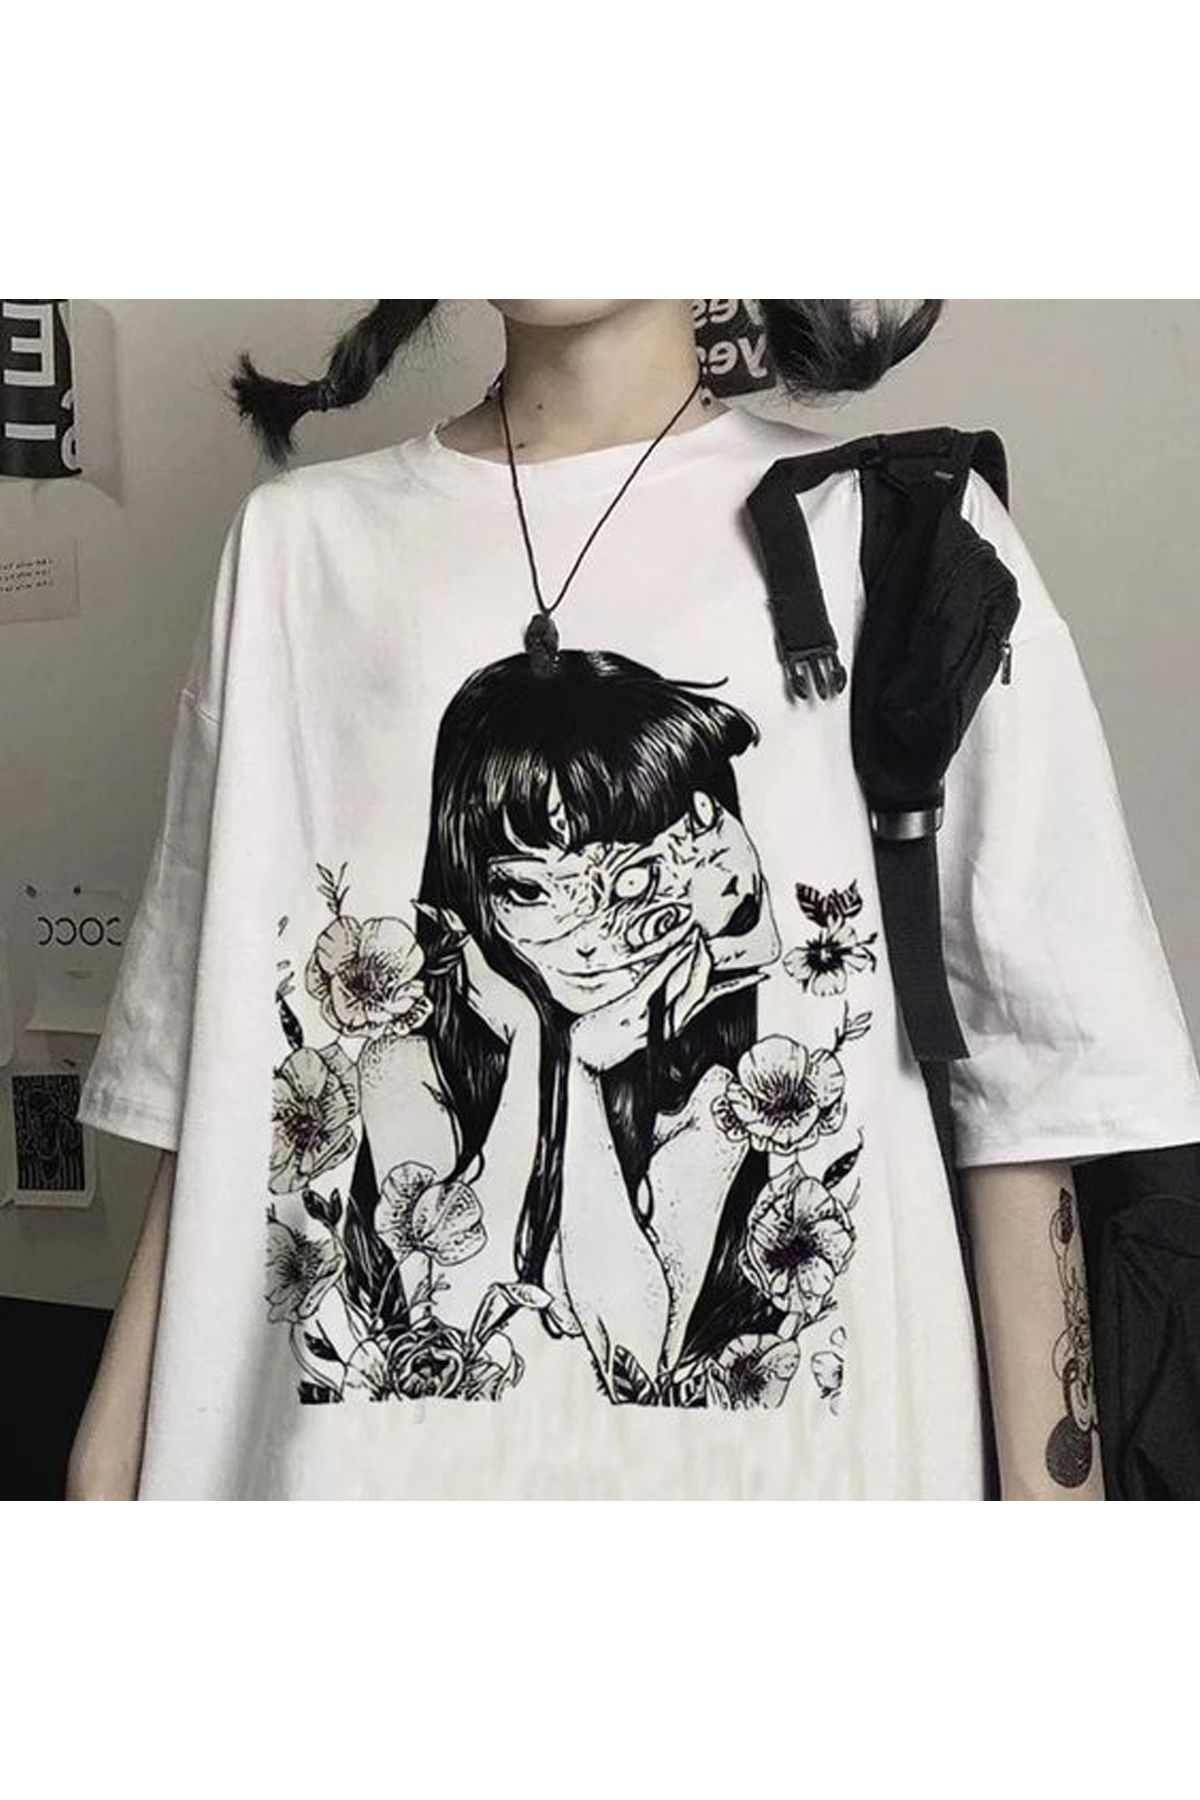 Vons Anime 3 Baskılı Beyaz Anime-Urban Oversize Unisex T-Shirt